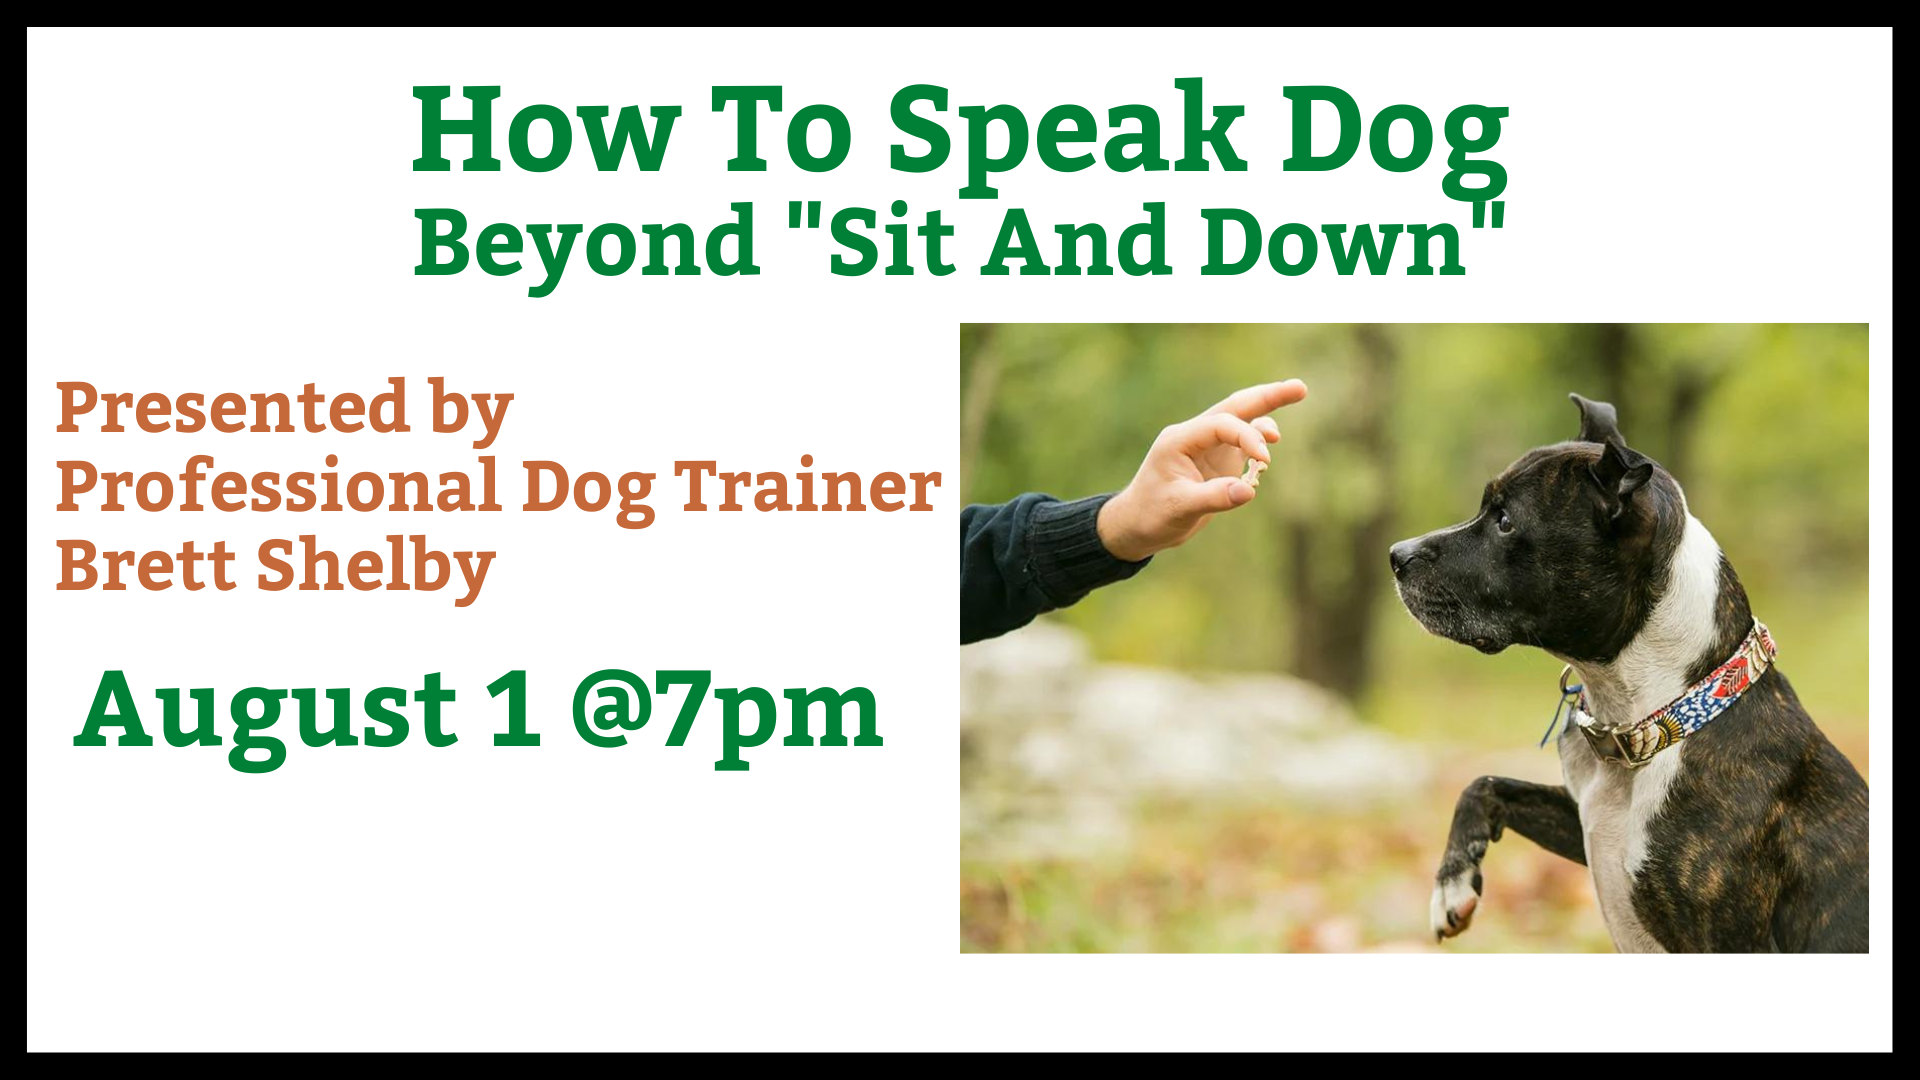 Dog training workshop by Brett Shelby